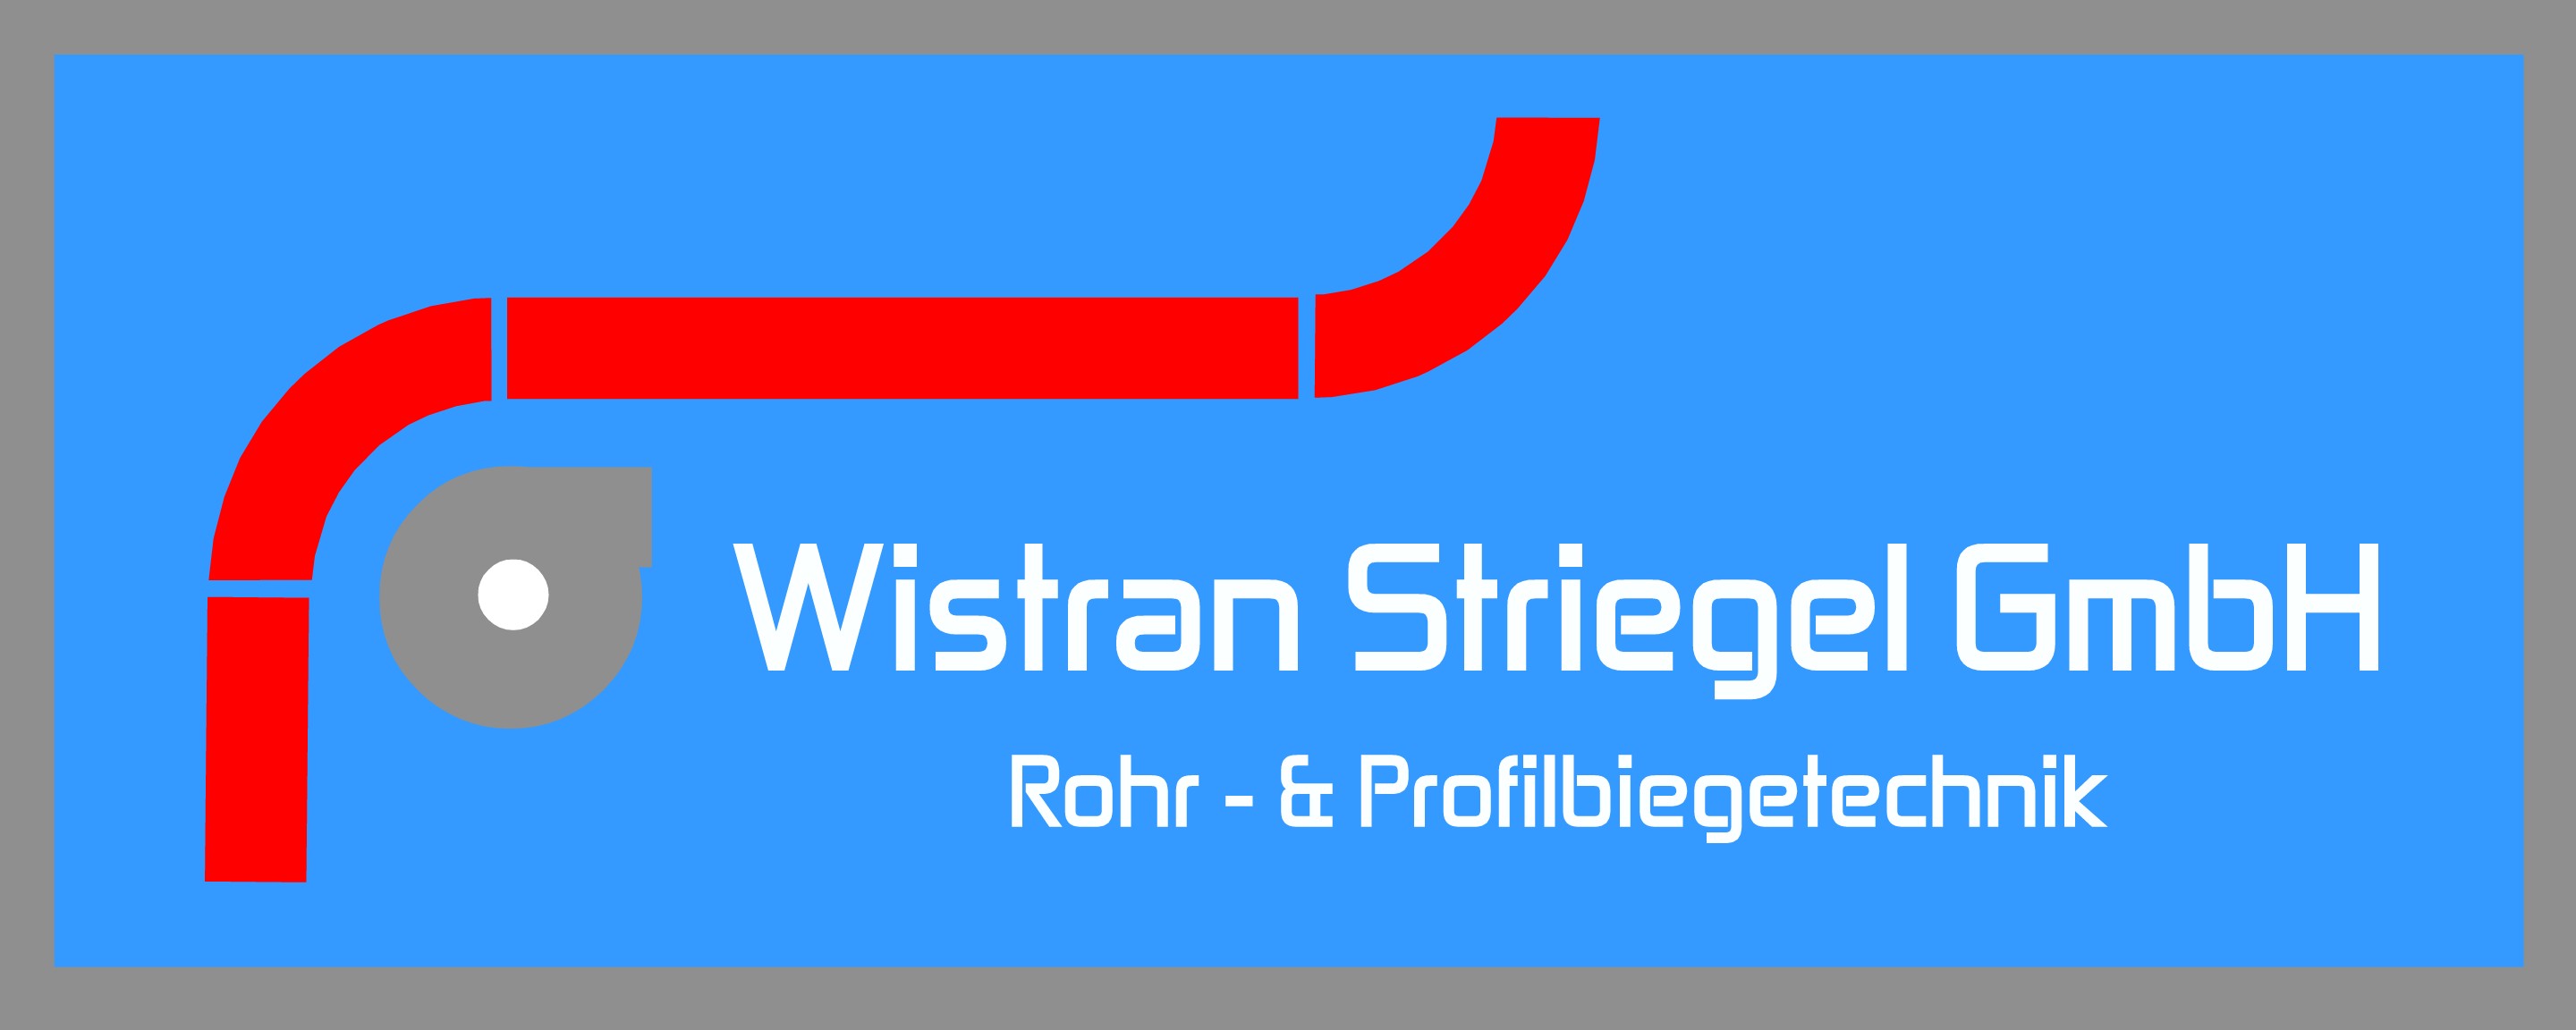 Wistran Striegel GmbH  Logo